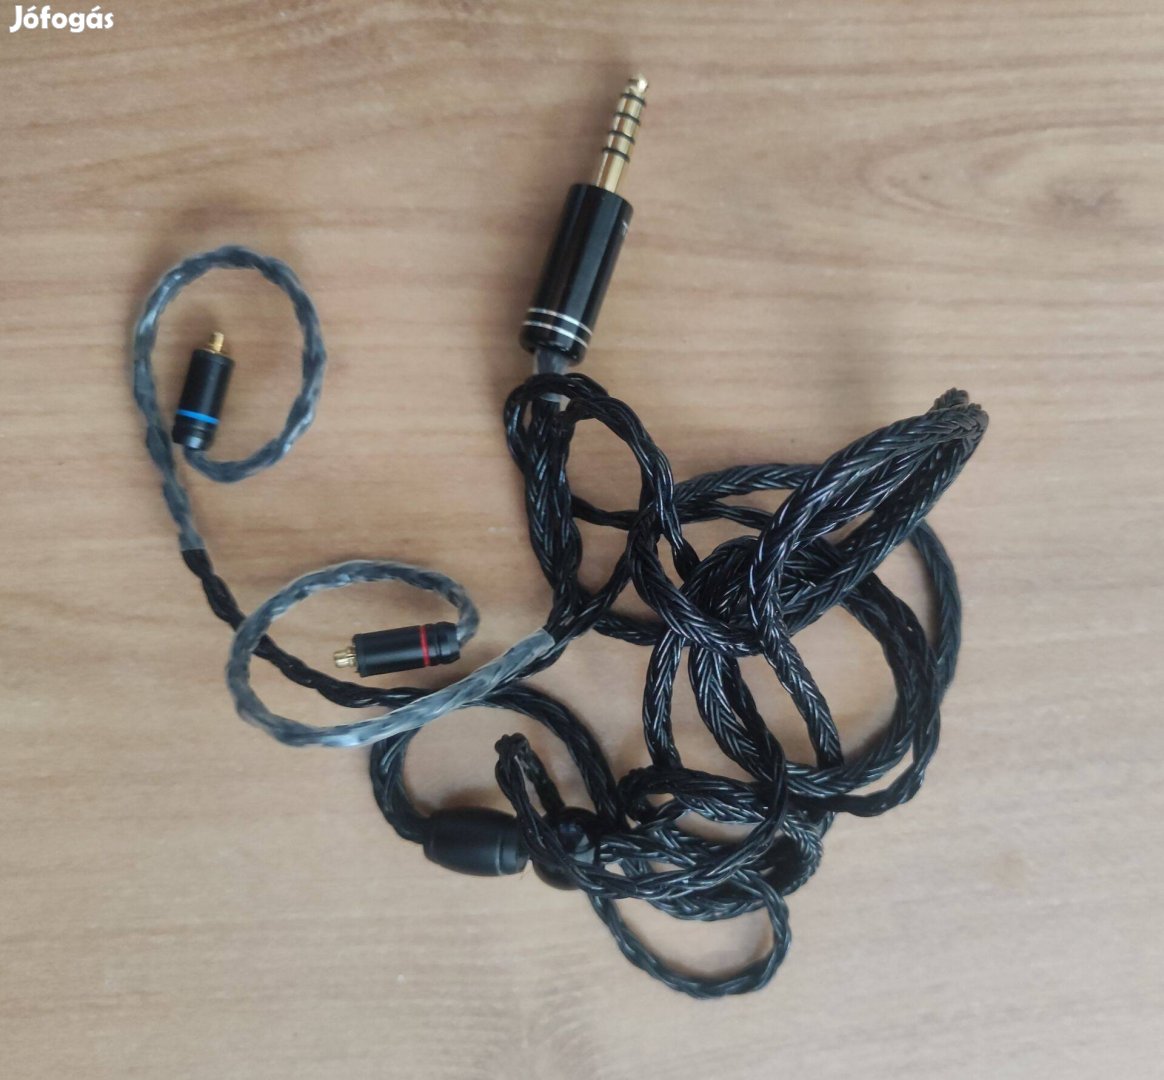 Új Balanced mmcx 4.4mm Fülhallgató Kábel Vezeték